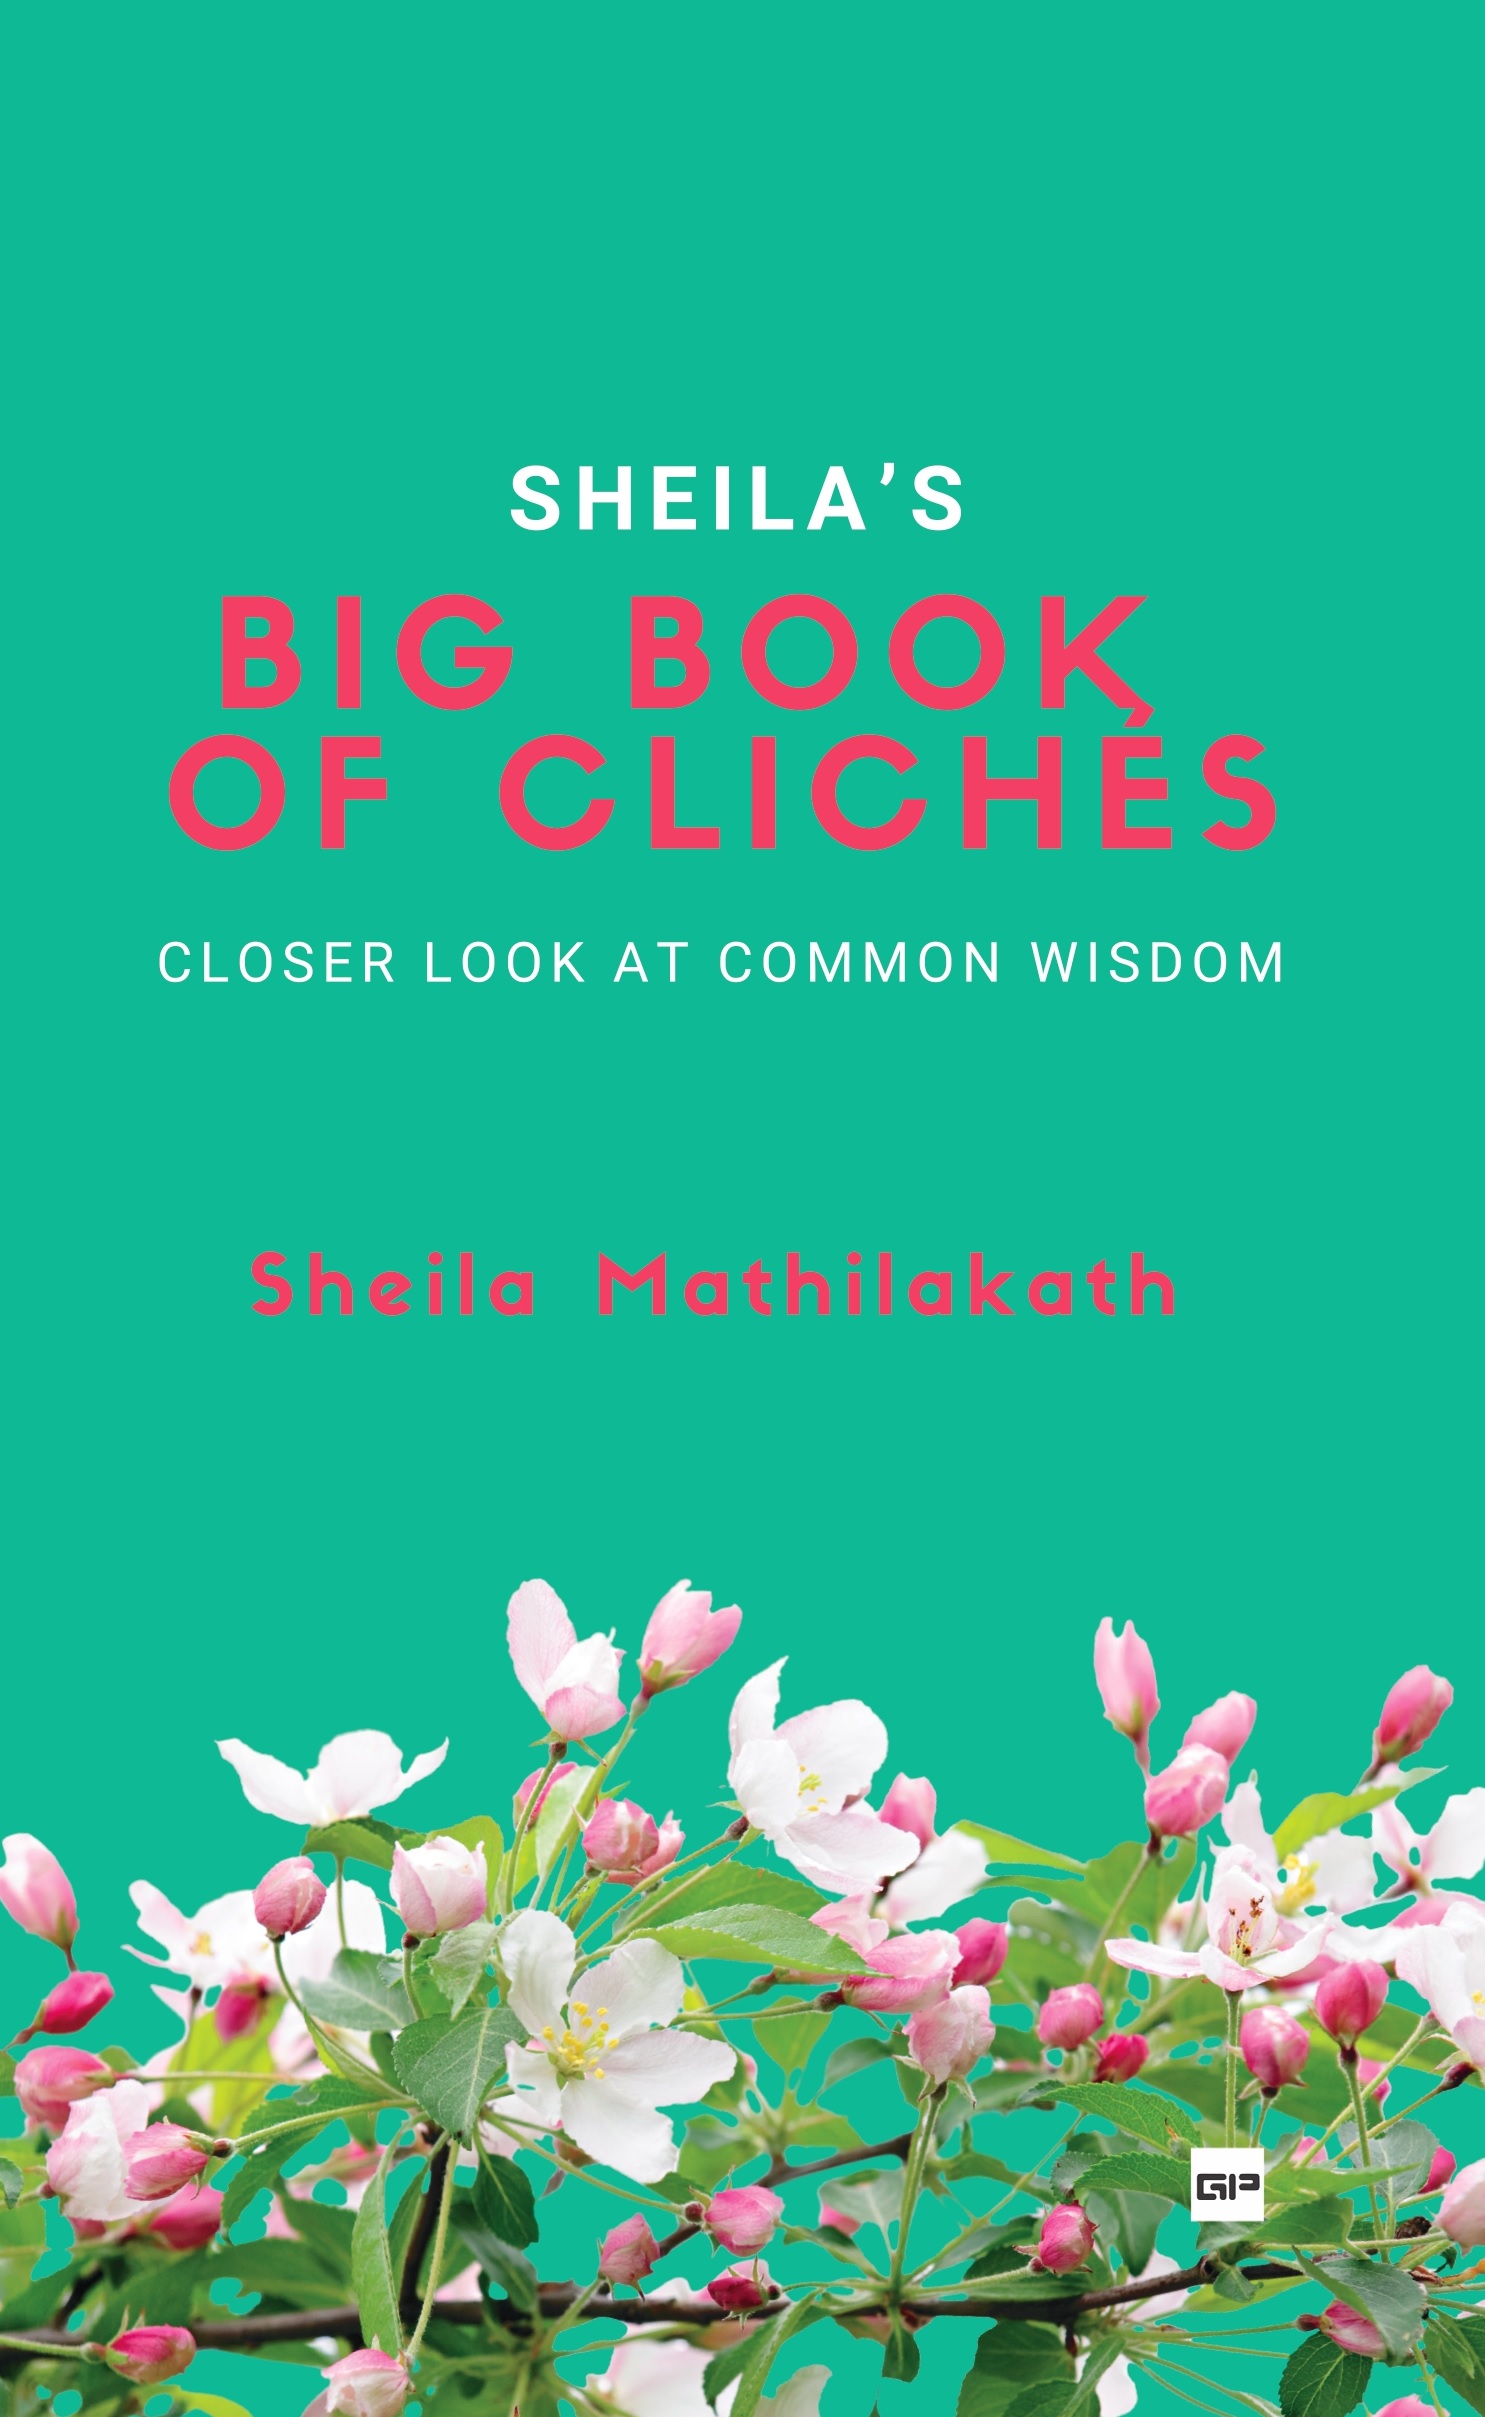 SHEILA’S BIG BOOK OF CLICHÉS: Closer look at Common Wisdom